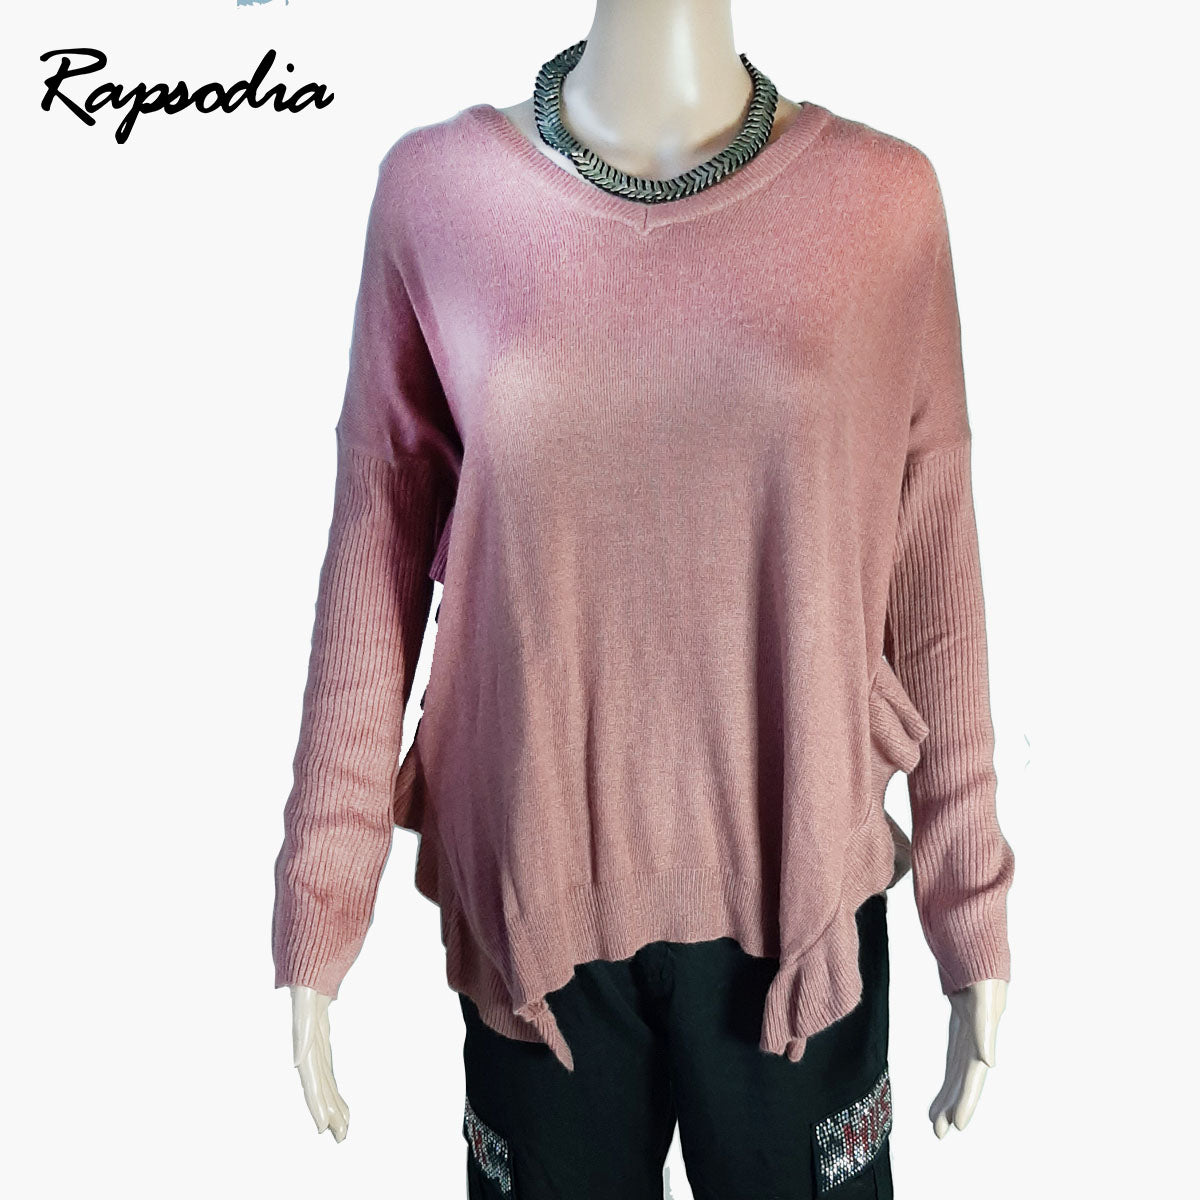 Sweater Rapsodia Maggie Rosa